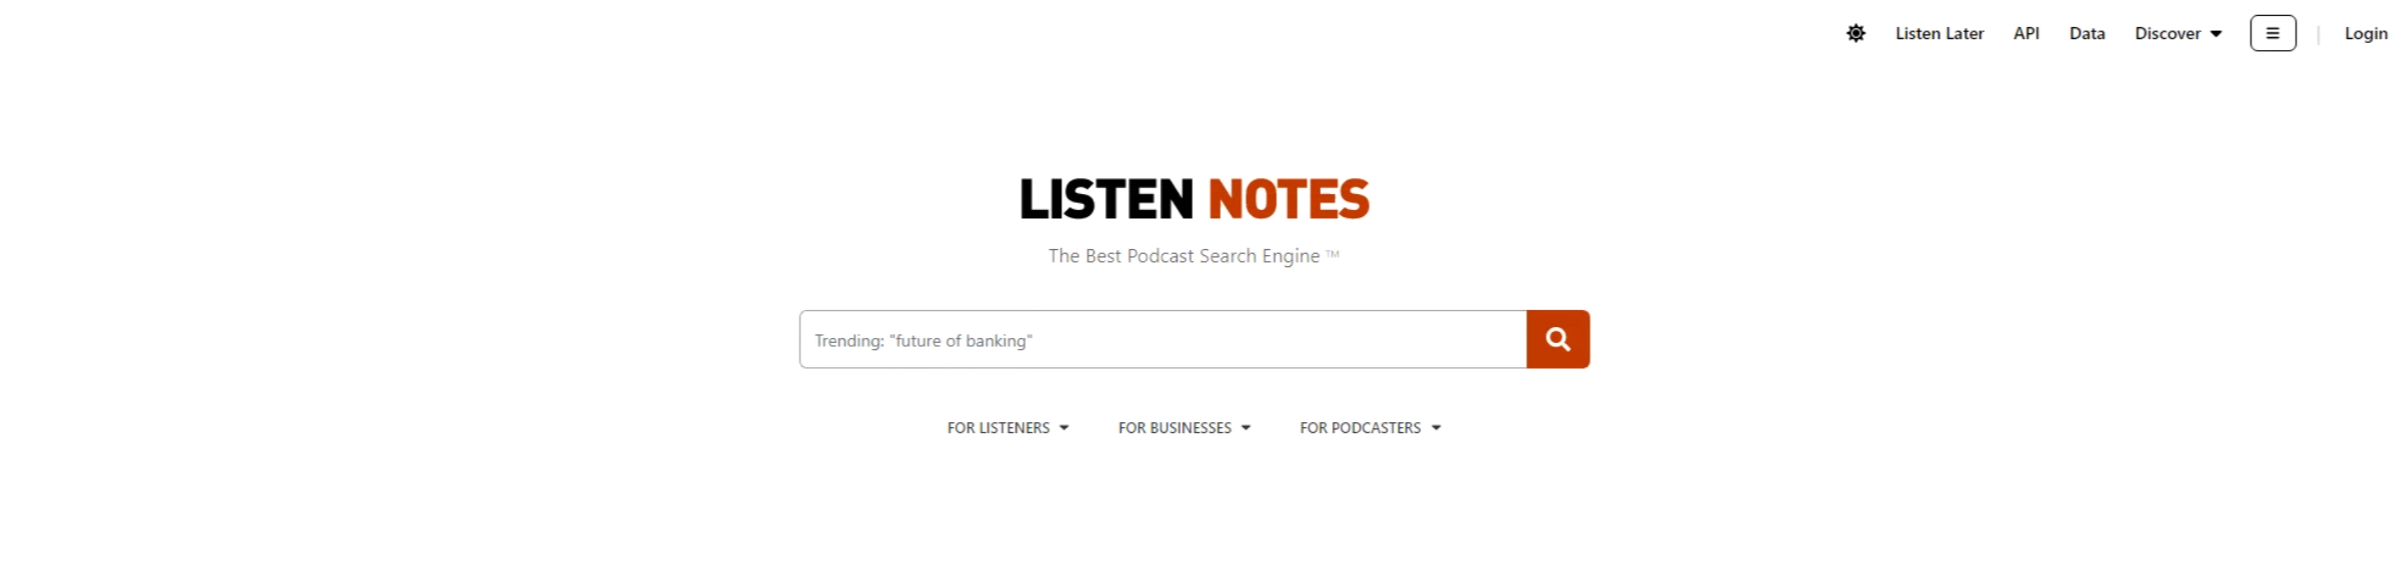 Buscadores aparte de Google: Listen Notes